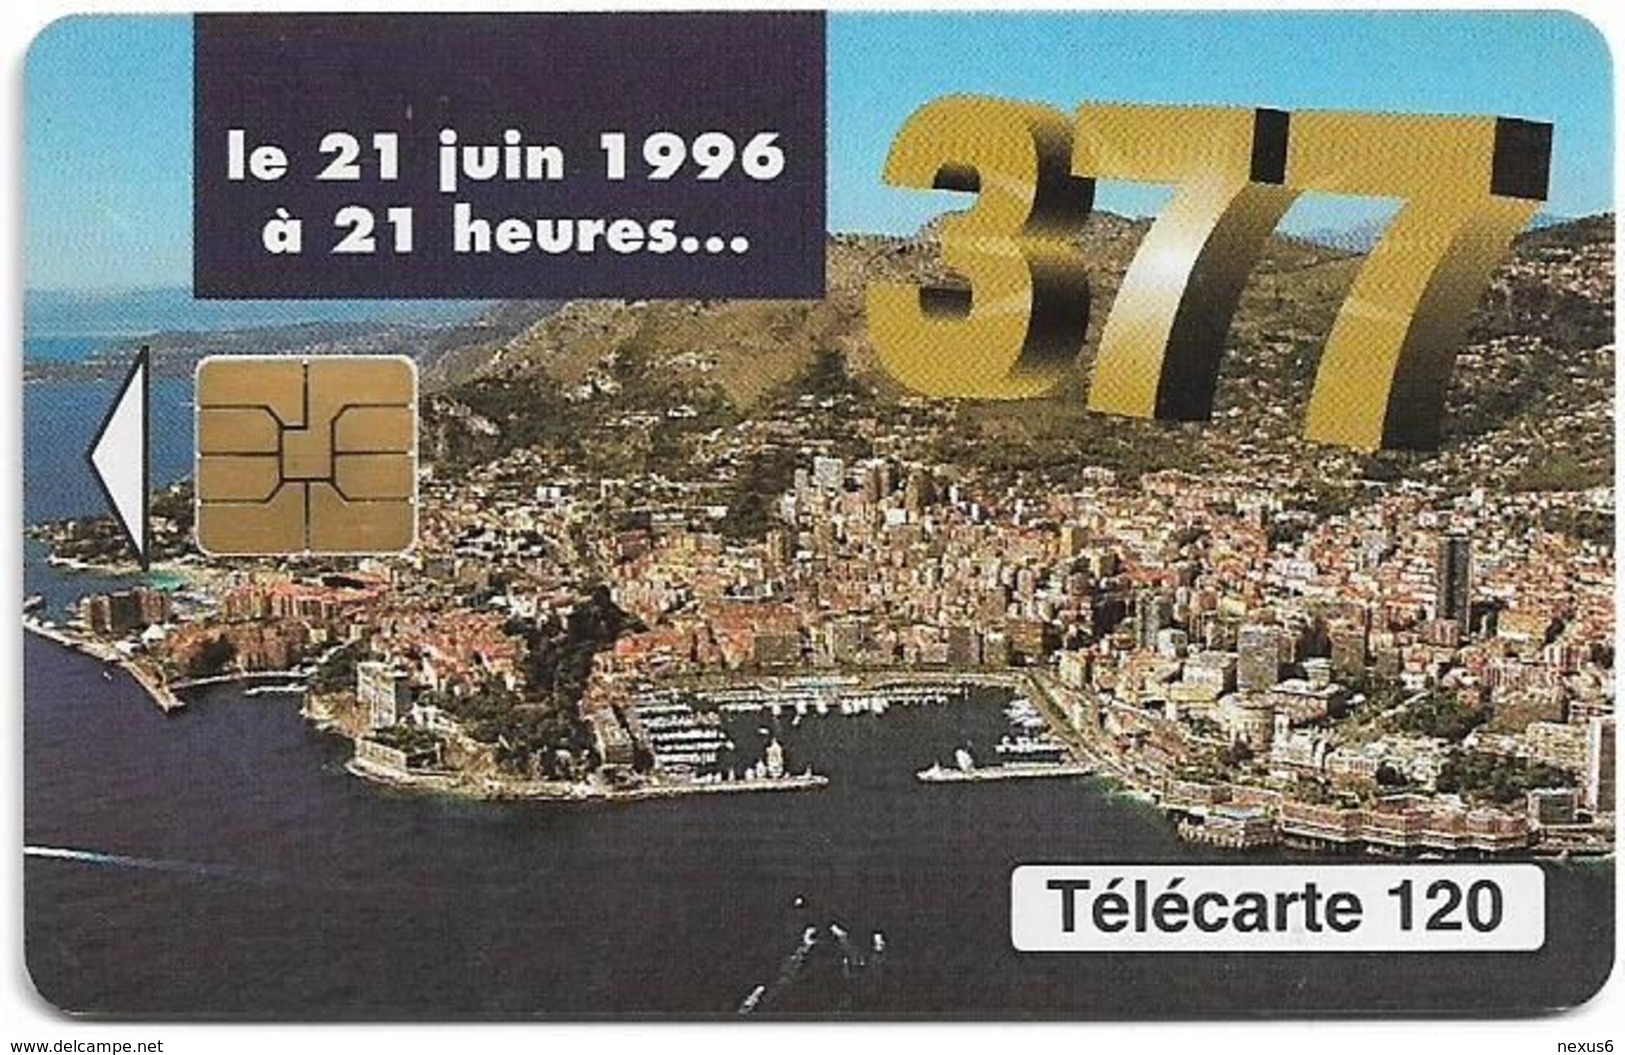 Monaco - MF42 - 377, Changement Numérotation - Cn. A Xxxxx467 - 06.1996, Solaic Afnor, 120Units, 100.000ex, Used - Monaco